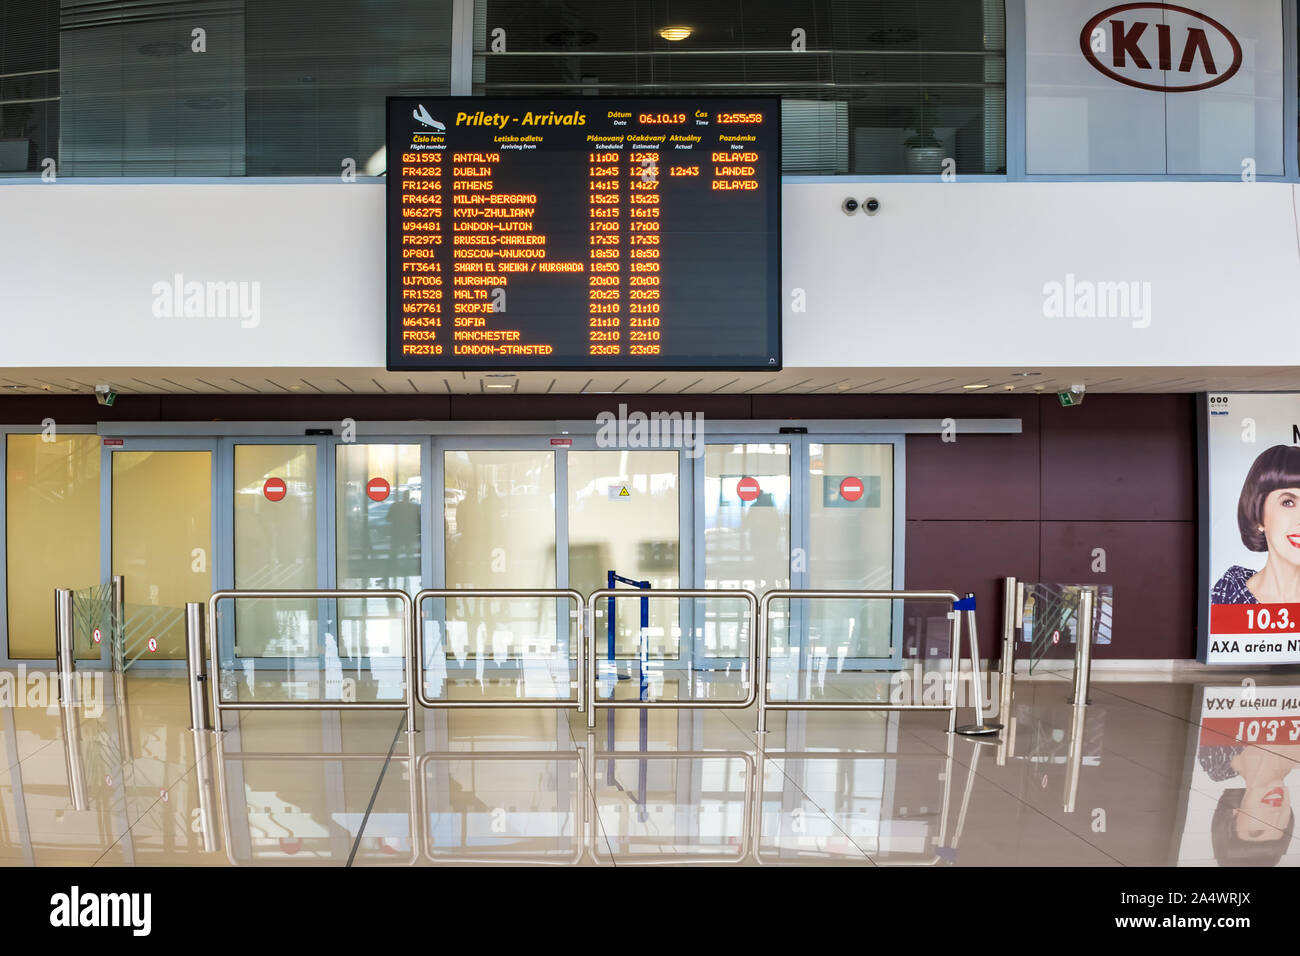 BRATISLAVA, Slovacchia - 6 ottobre 2019: Arrivi assicella sopra le porte chiuse del reclamo bagagli nella sala arrivi dell'aeroporto di Bratislava terminale (Slova Foto Stock